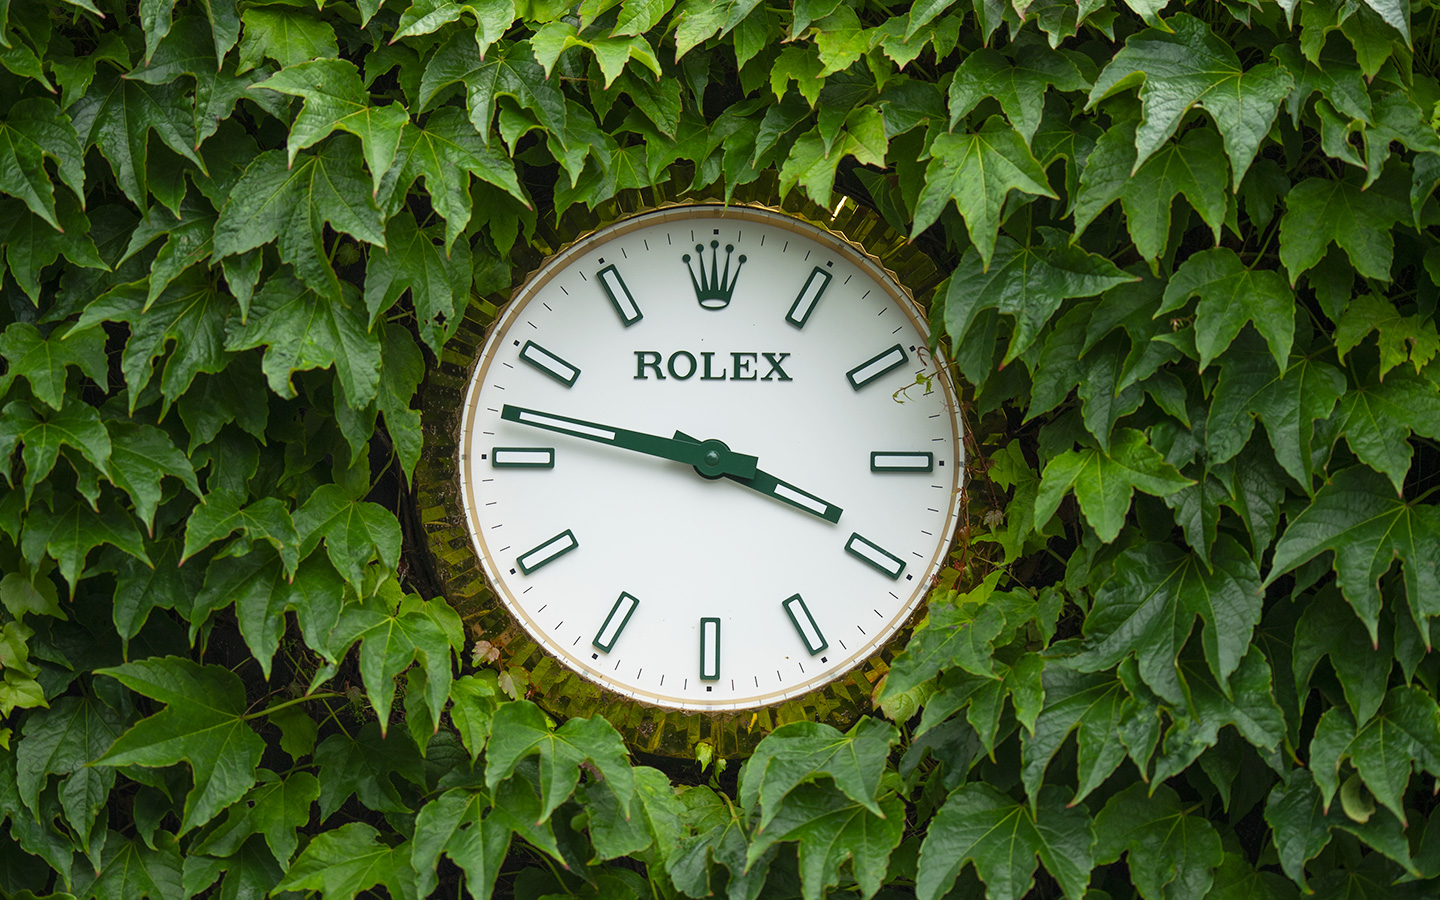 Rolex watch at Wimbledon